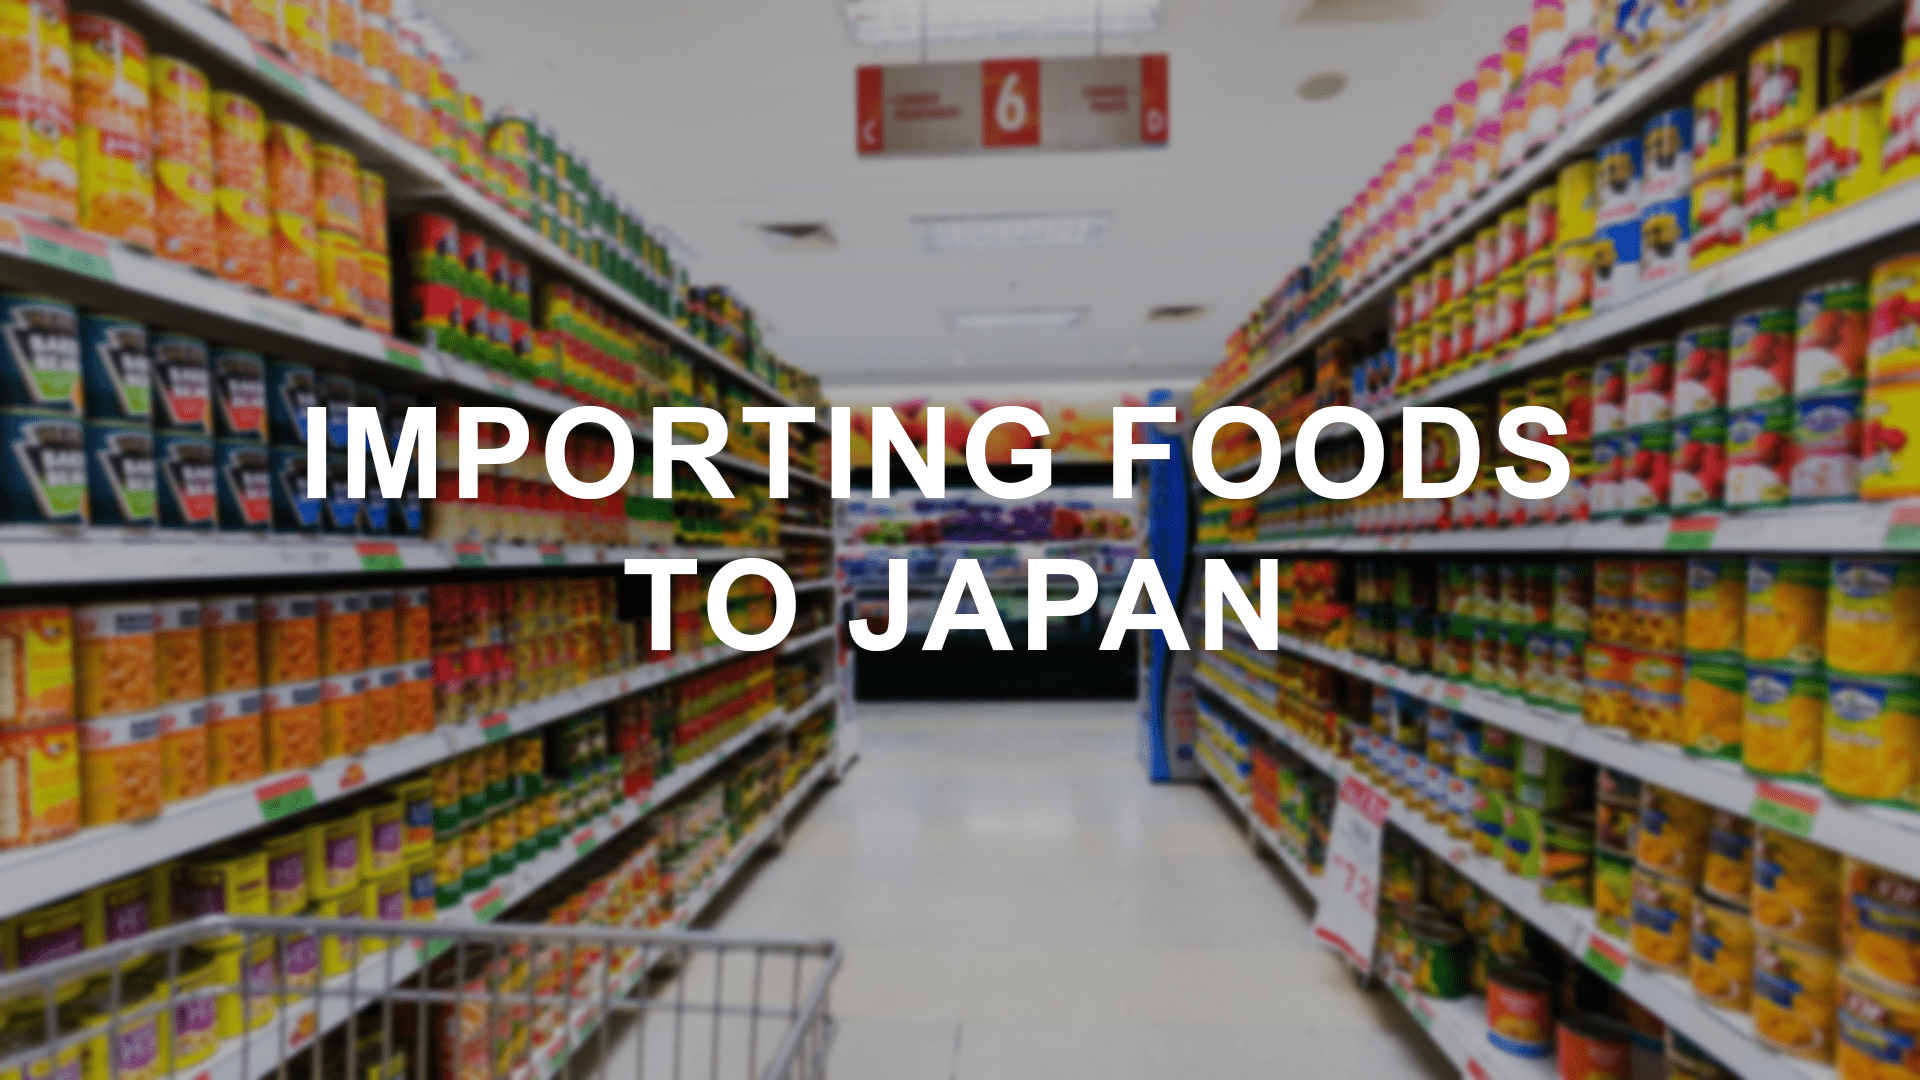 FOODS nach Japan importieren: Was Sie wissen müssen?